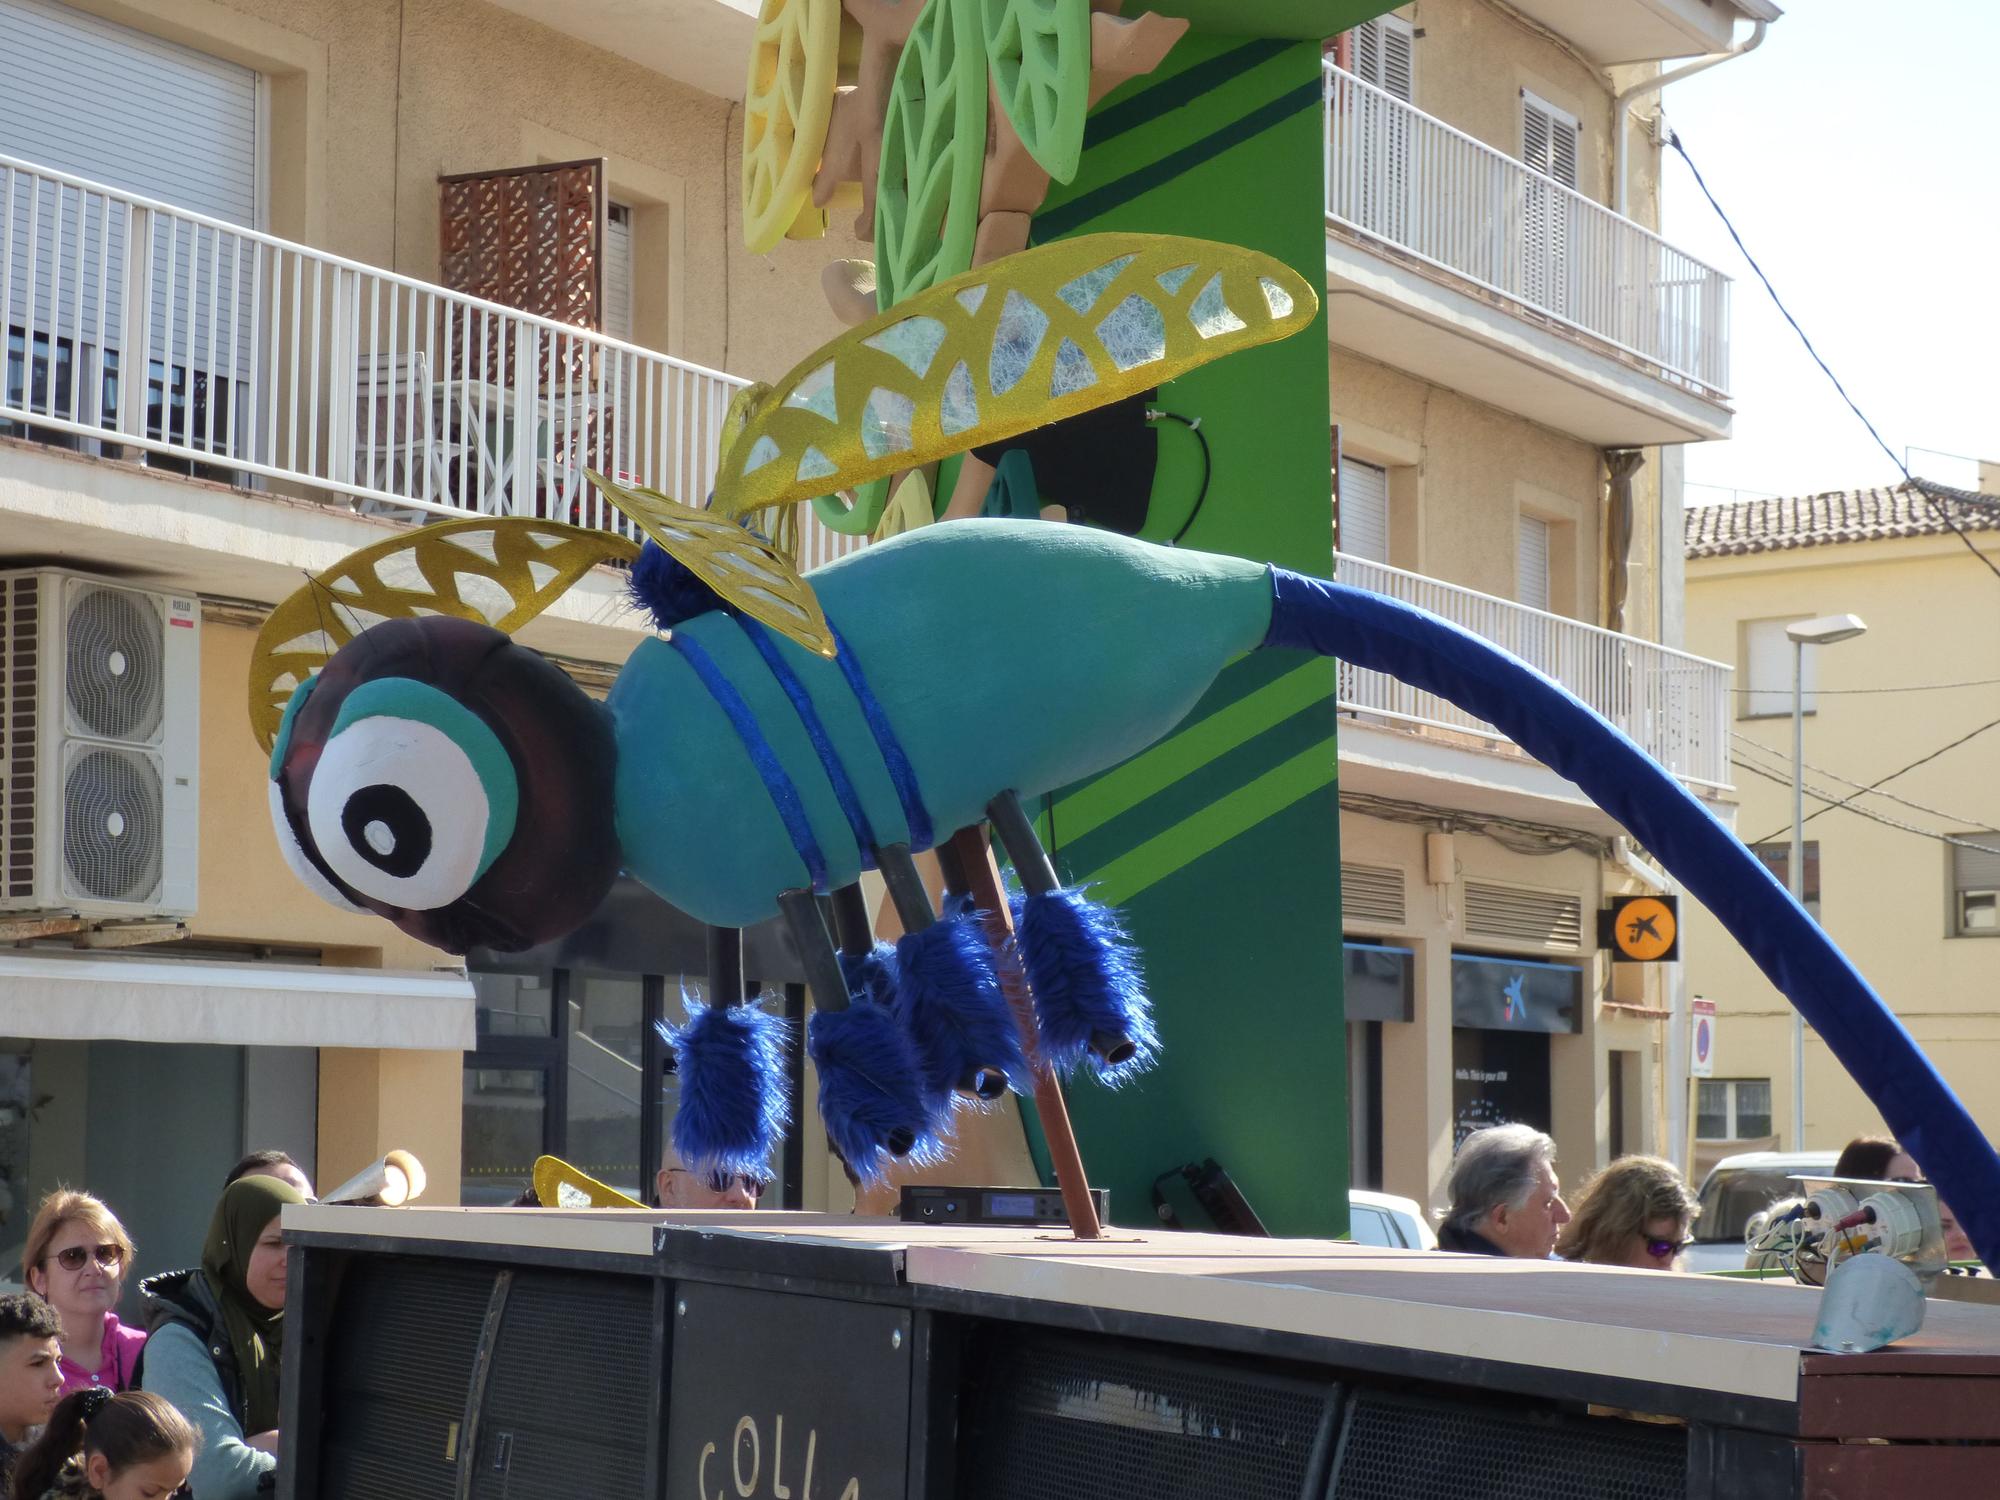 L'Escala vibra amb una rua de carnaval carregada d'imaginació